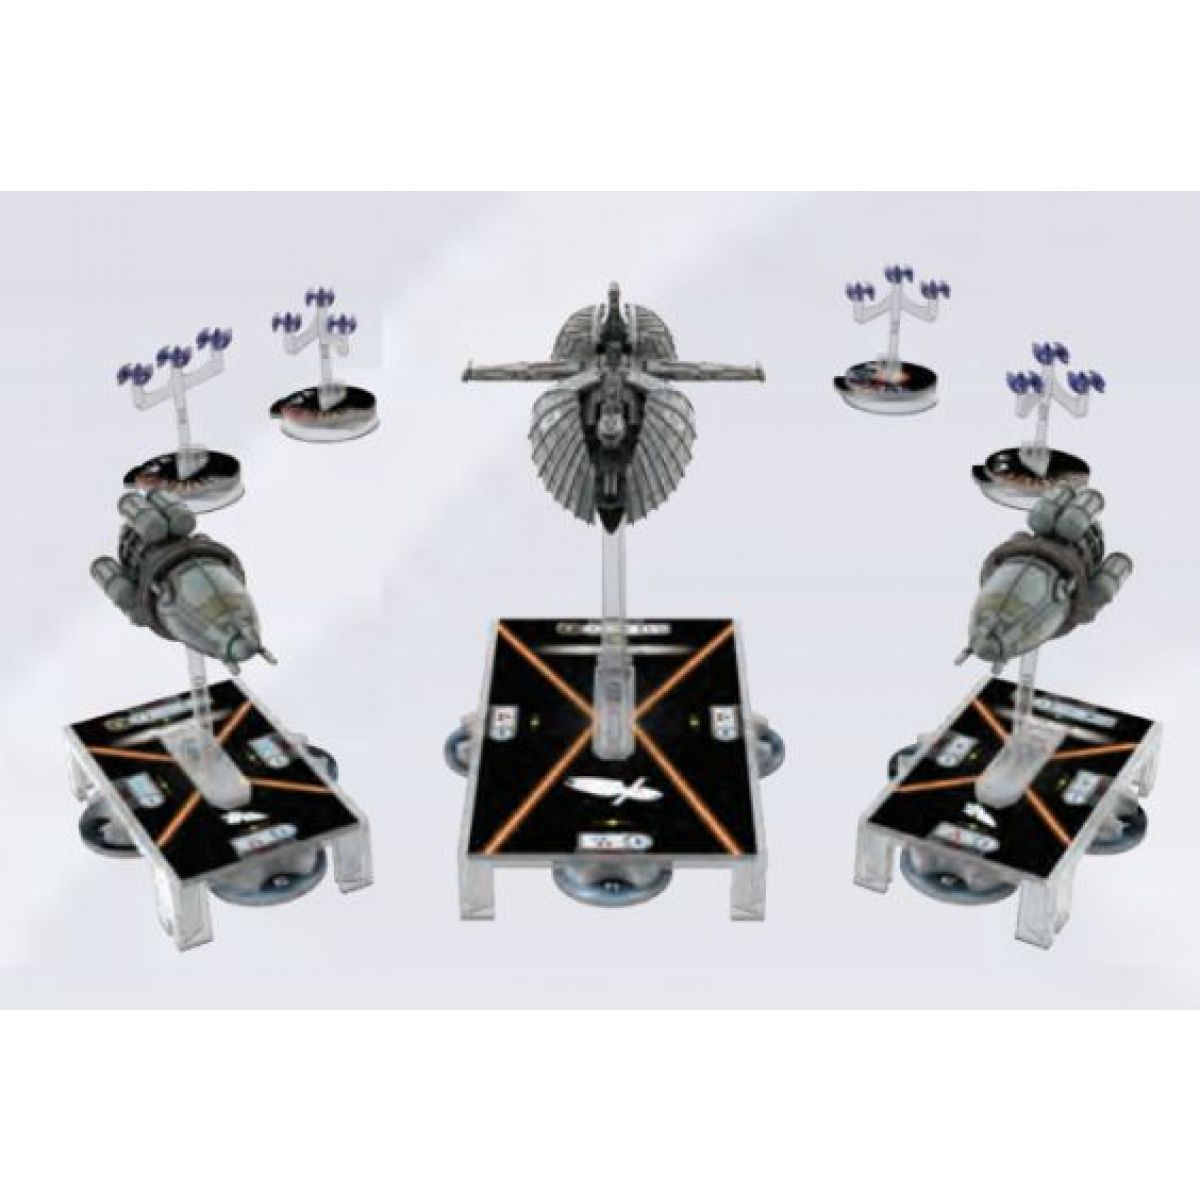 Armada Separatist Alliance Fleet Starter Set Fantasy Flight Games Star Wars for sale online SWM35 